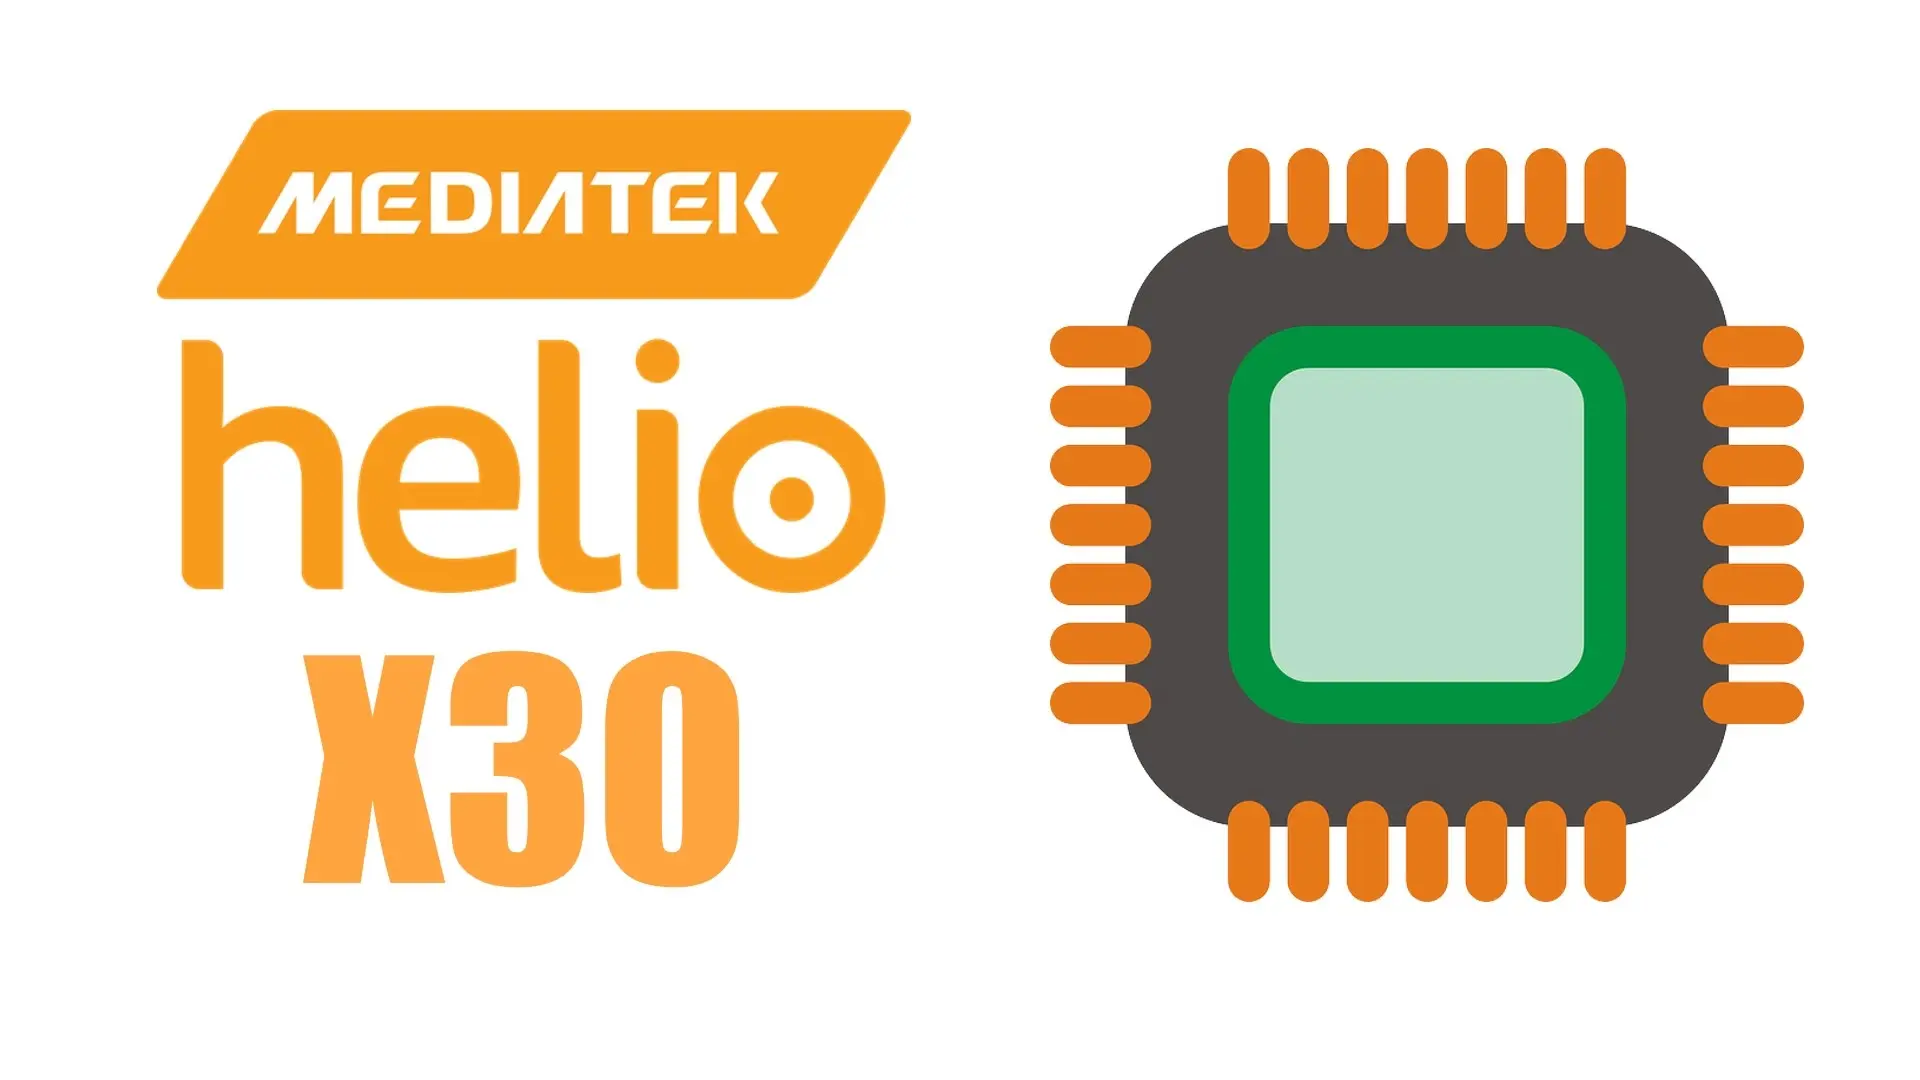 Helio media. Helio x30. MEDIATEK Helio. Линейка процессоров Helio. Медиатек Хелио p35.